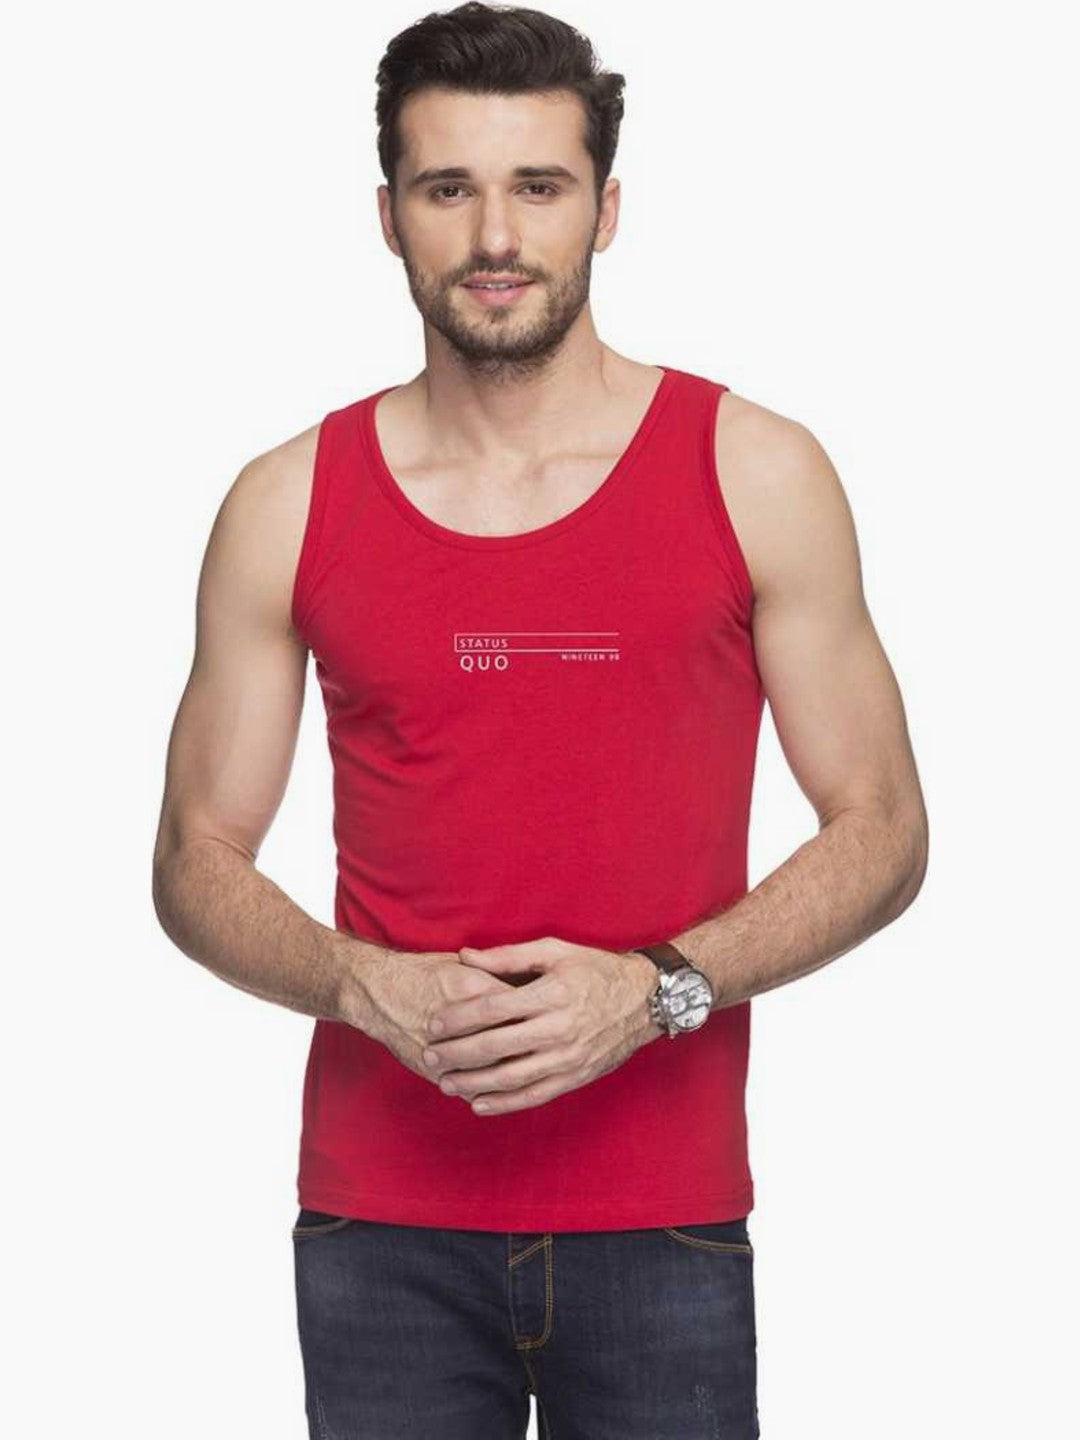 Red Sleeveless T-Shirt